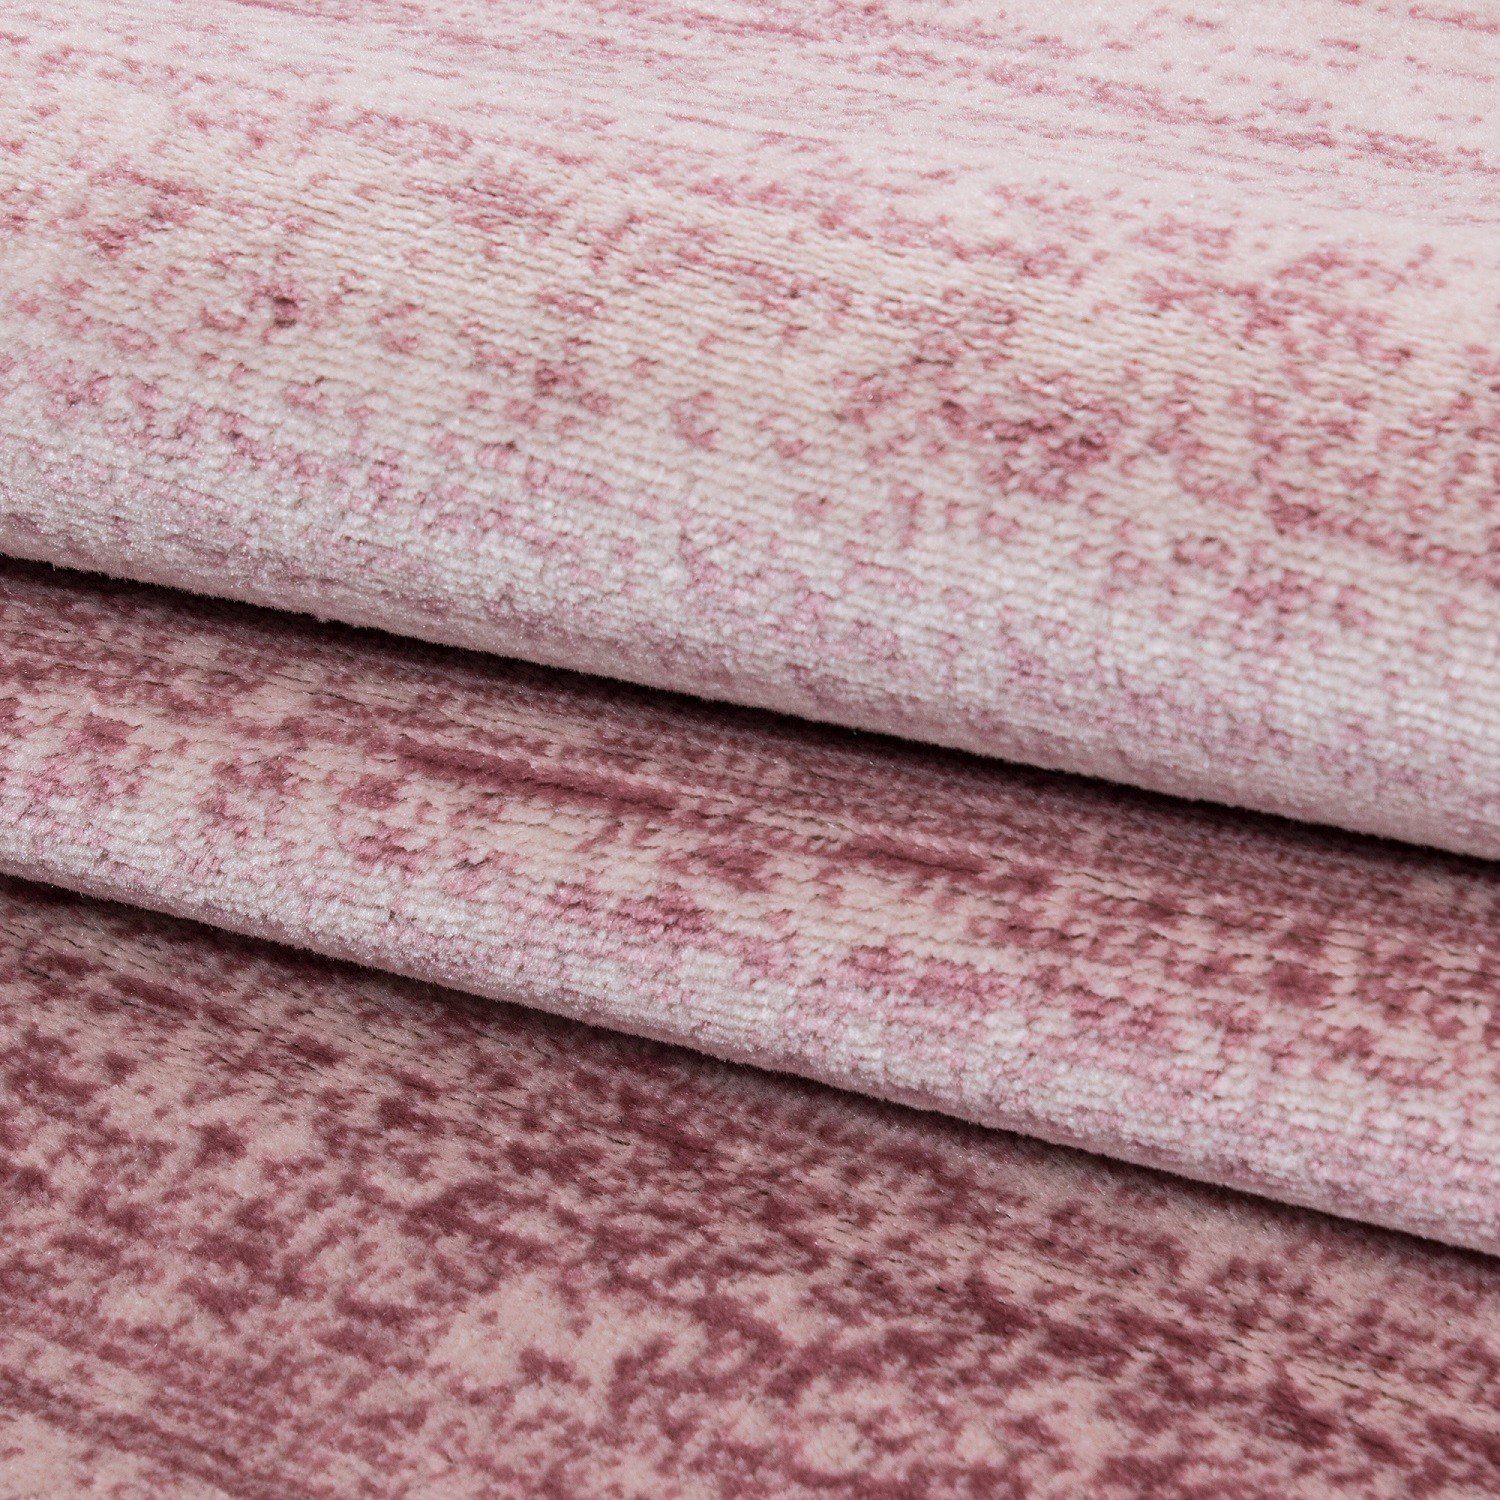 Designteppich Flachflorteppich meliert Kurzflorteppich Pink Miovani Wohnzimmer, Designerteppich